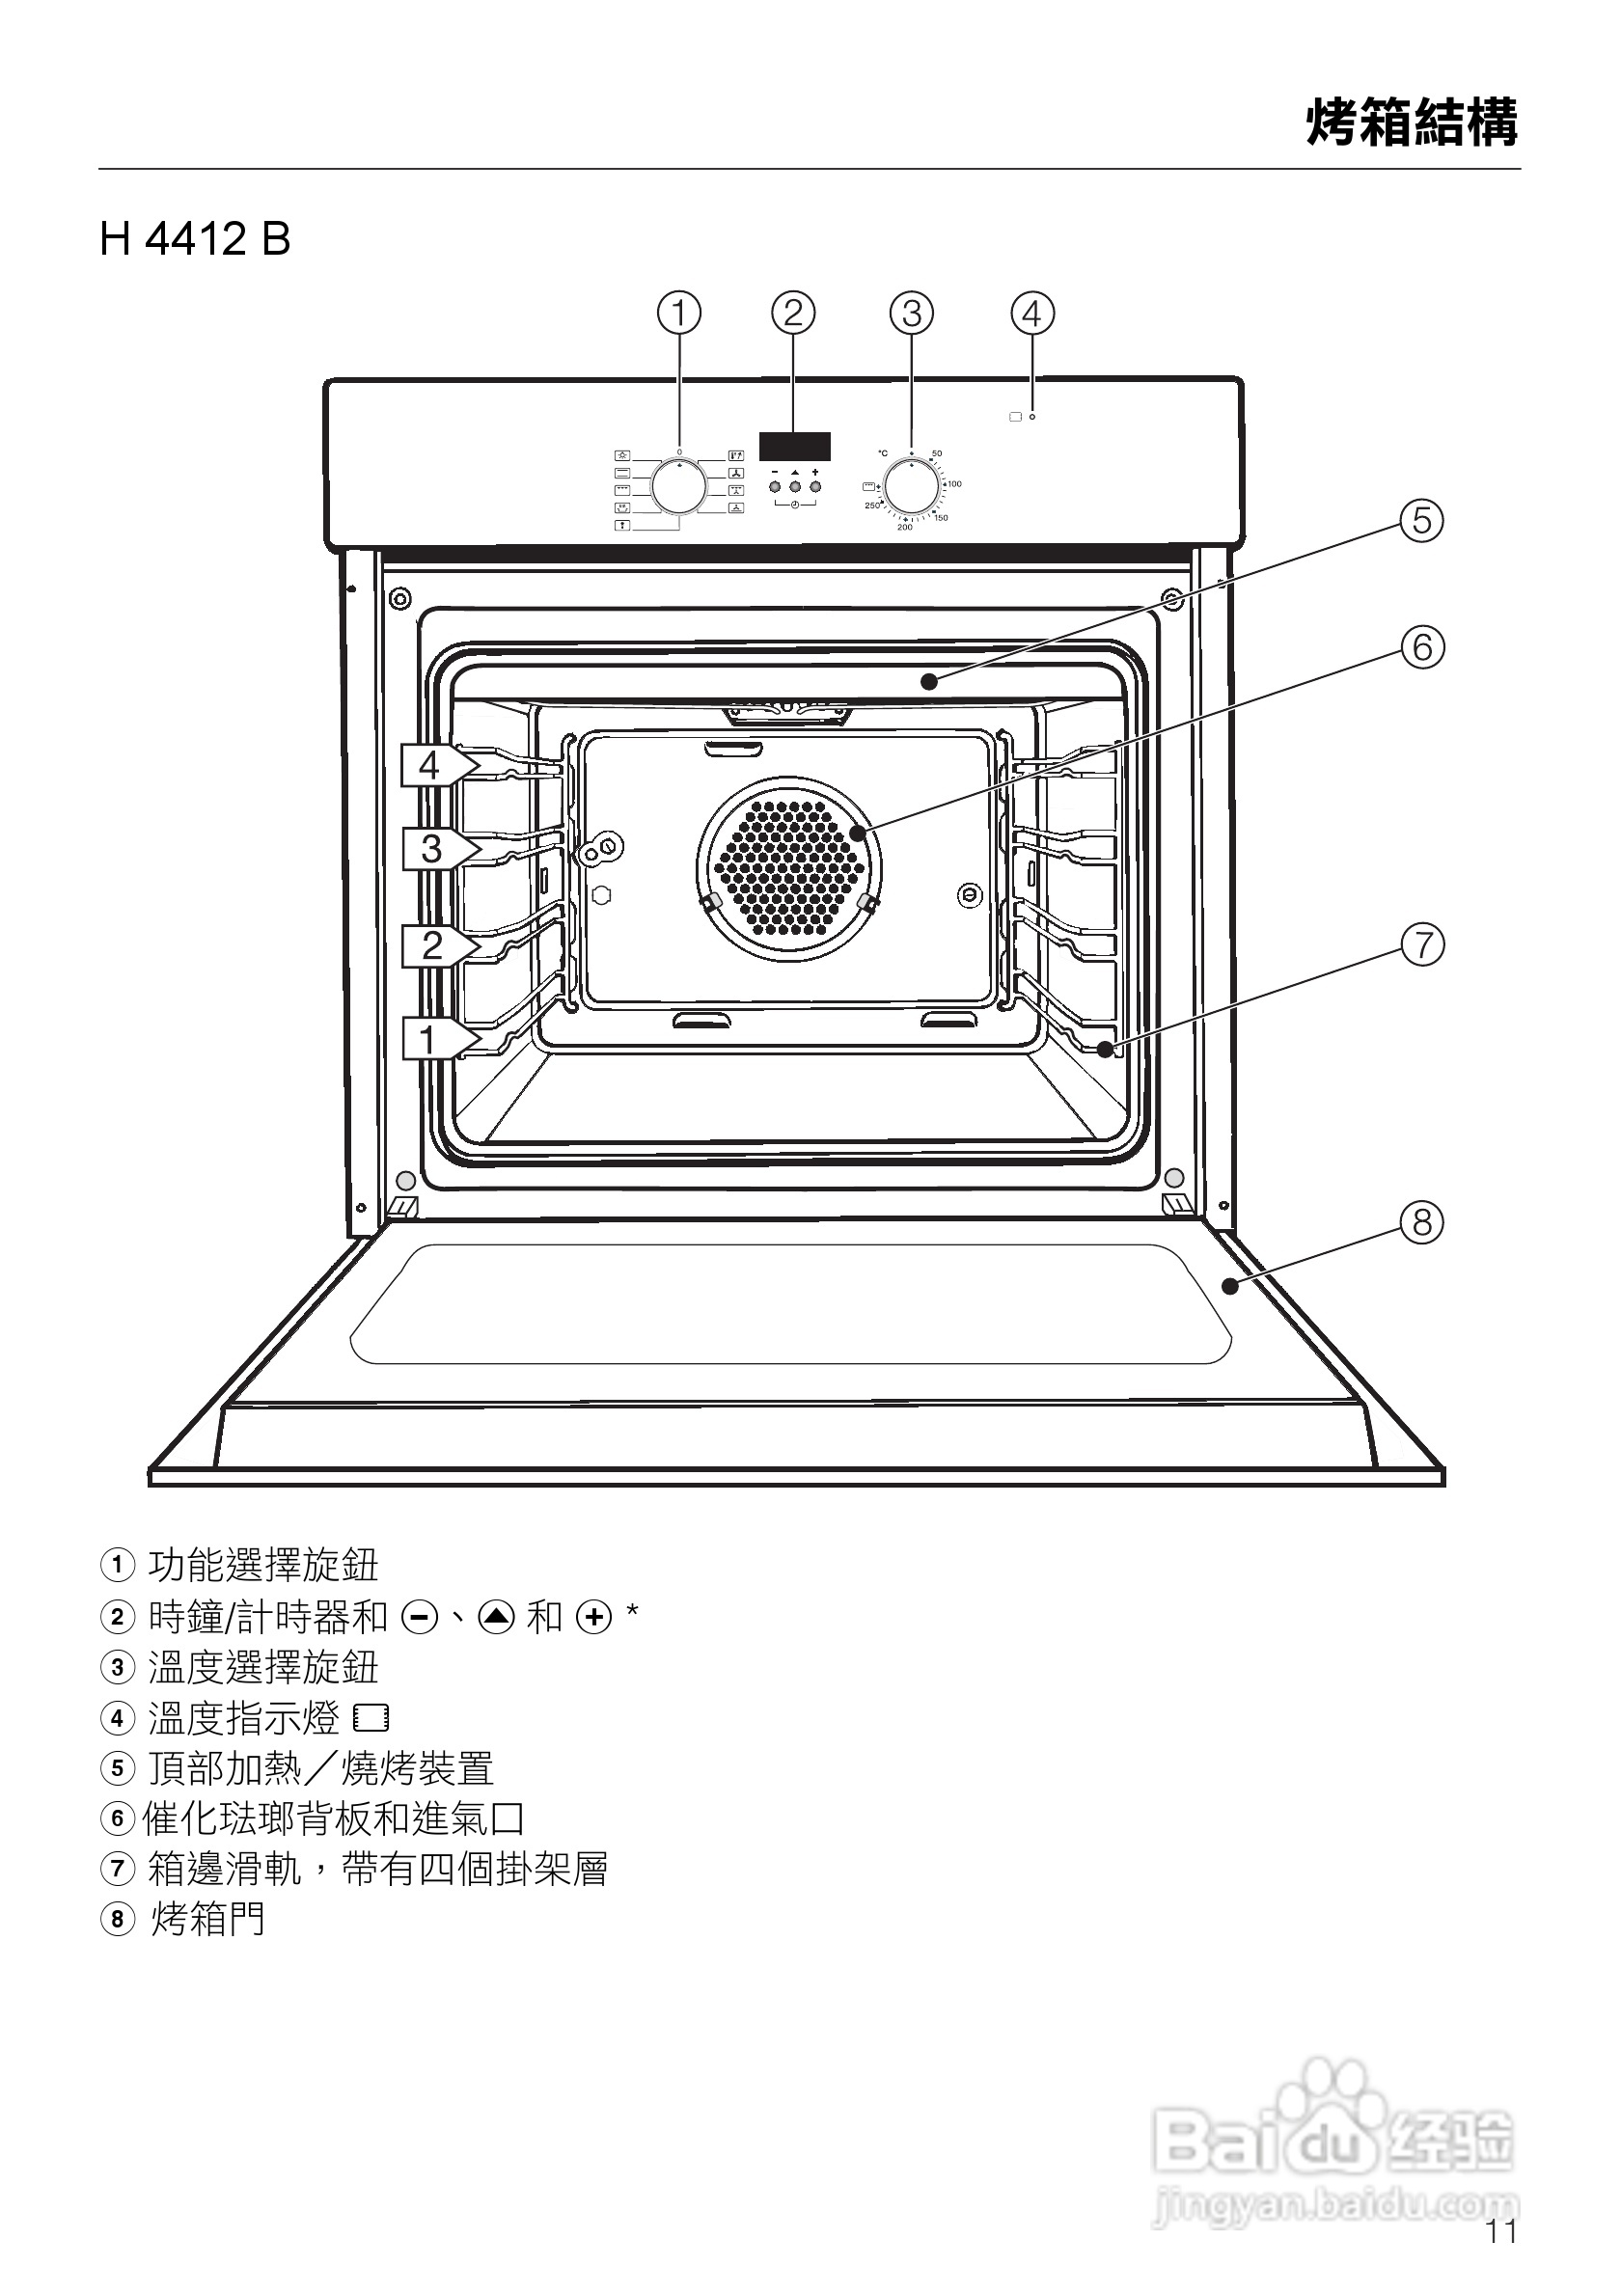 米技烤箱使用图解图片